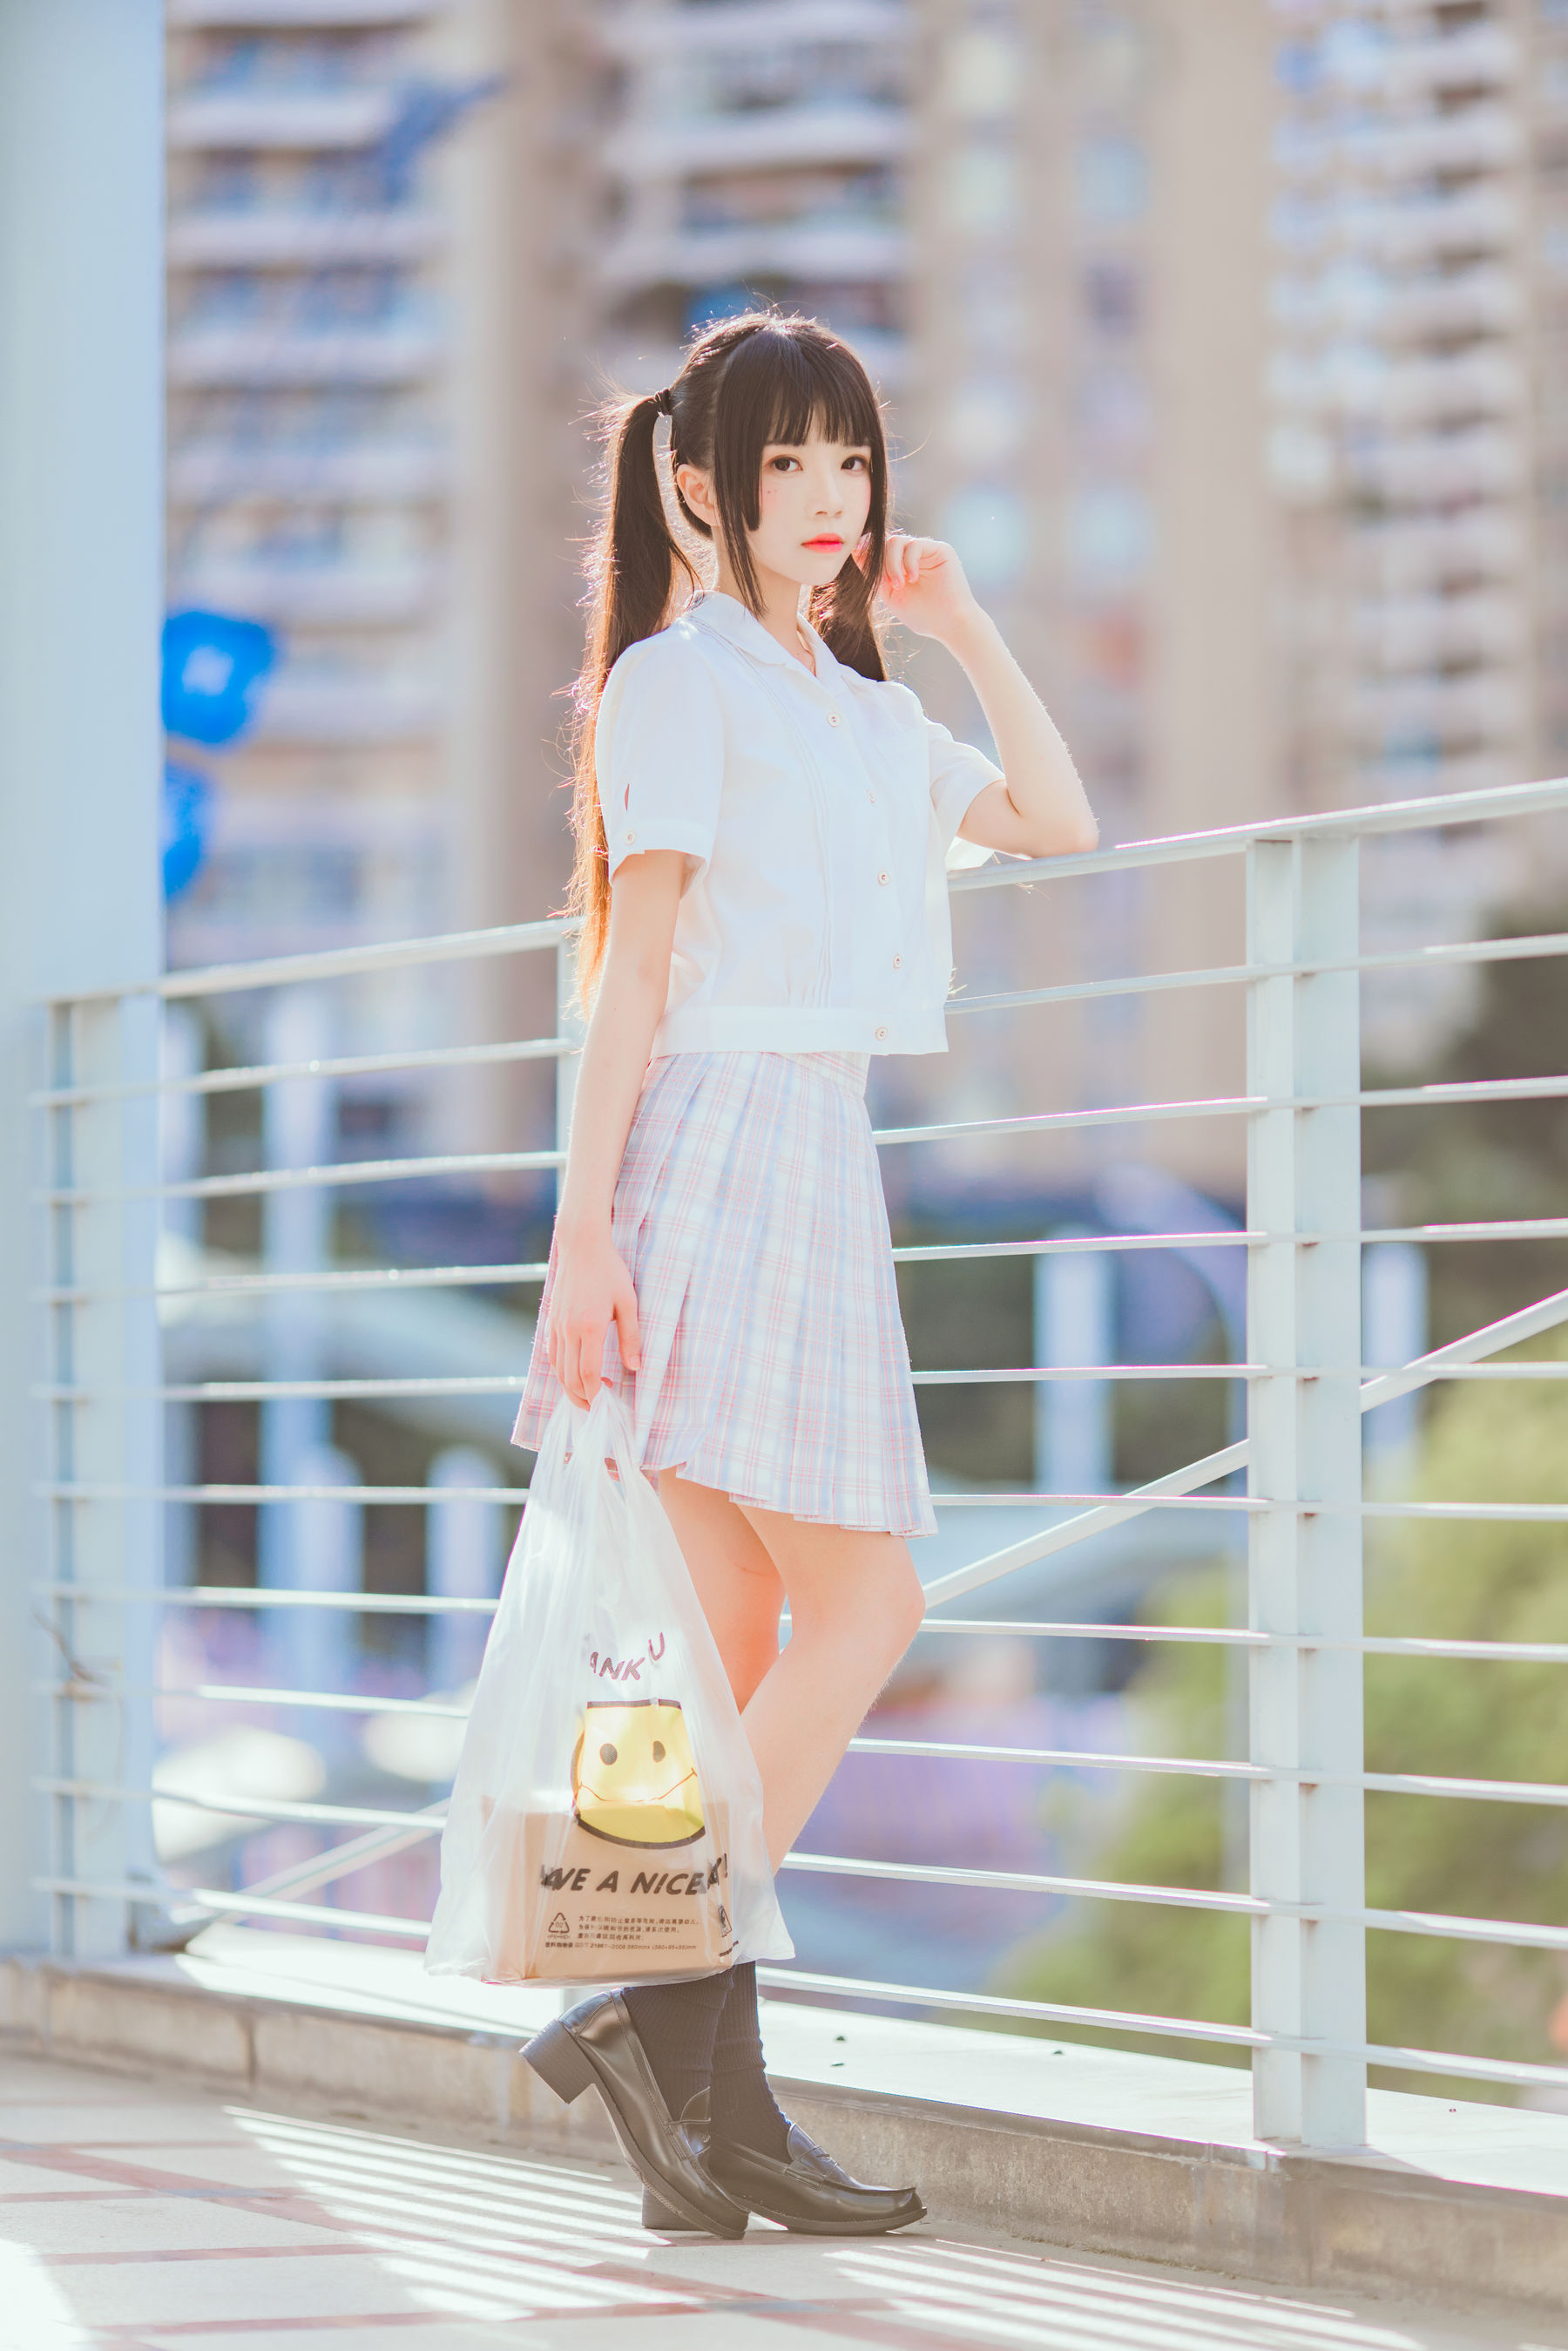 People 1800x2698 CherryNeko women model twintails outdoors women outdoors urban miniskirt long hair Asian